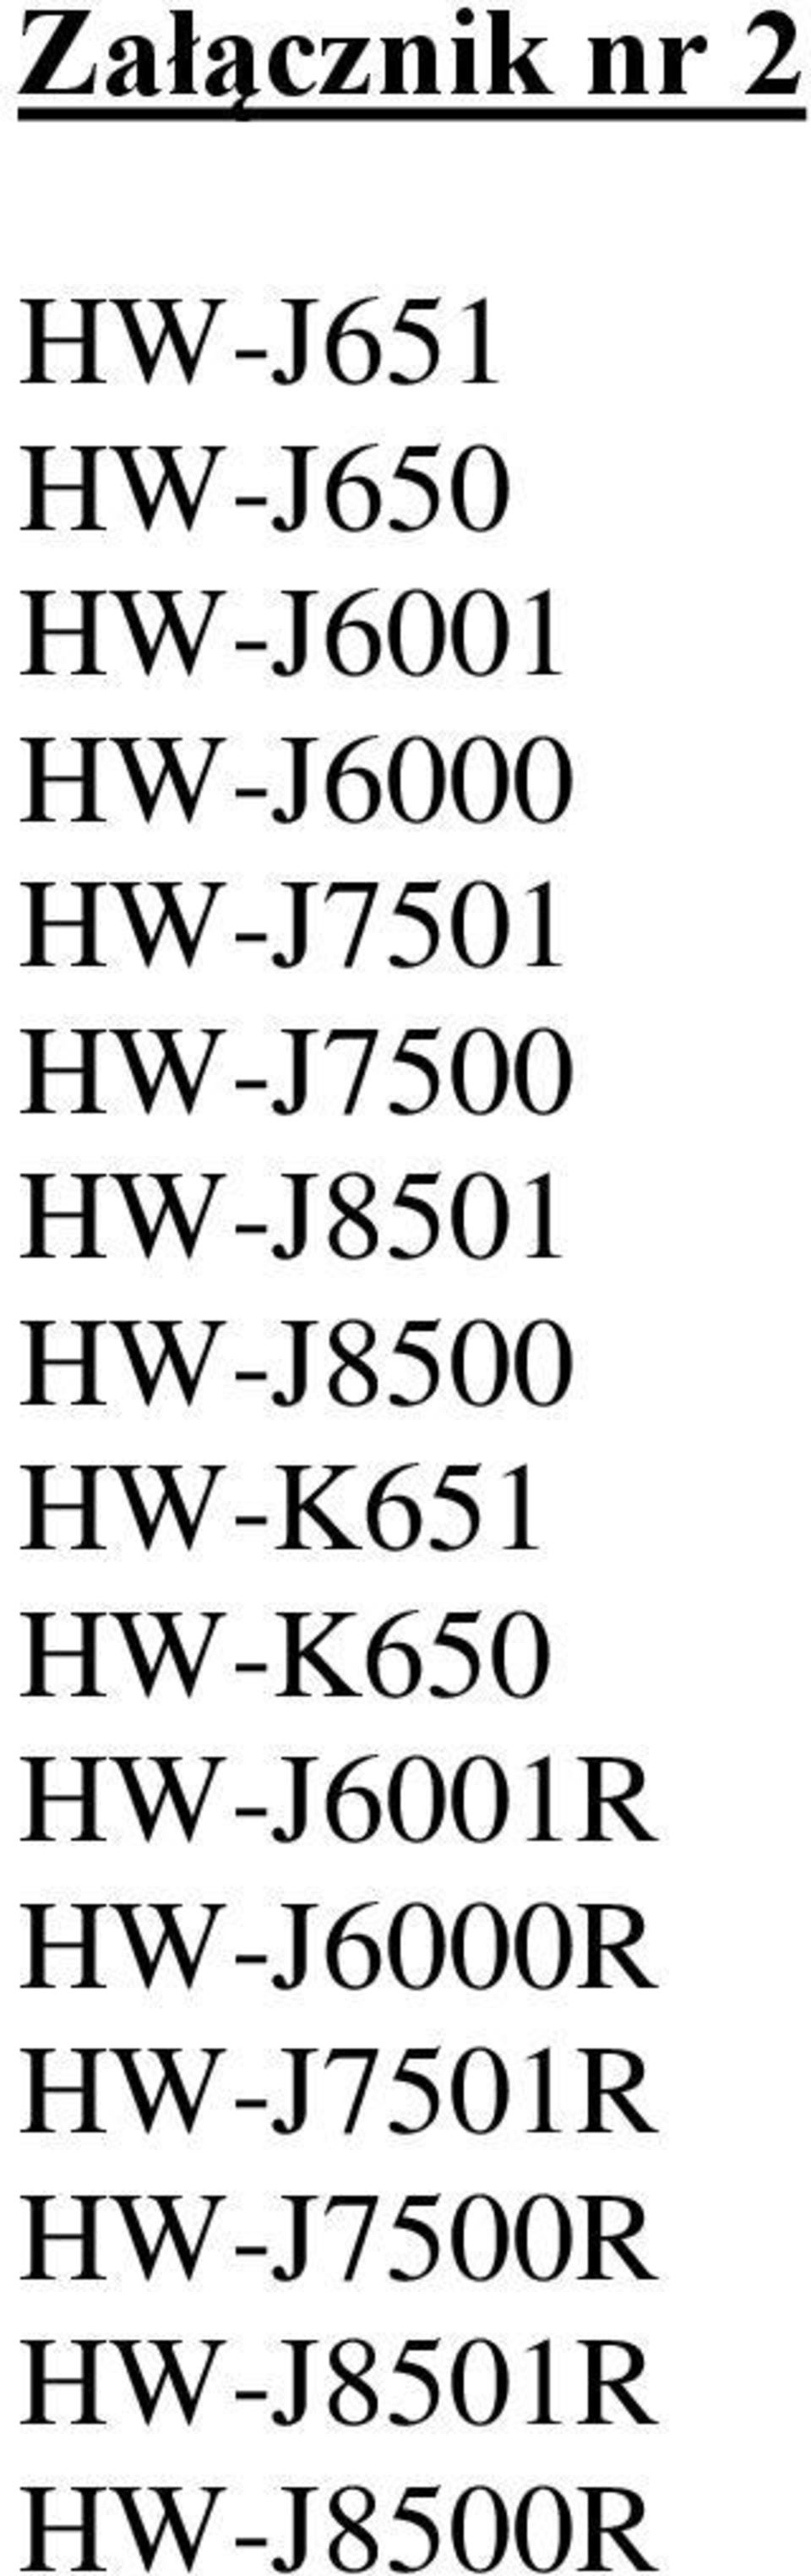 HW-J8500 HW-K651 HW-K650 HW-J6001R